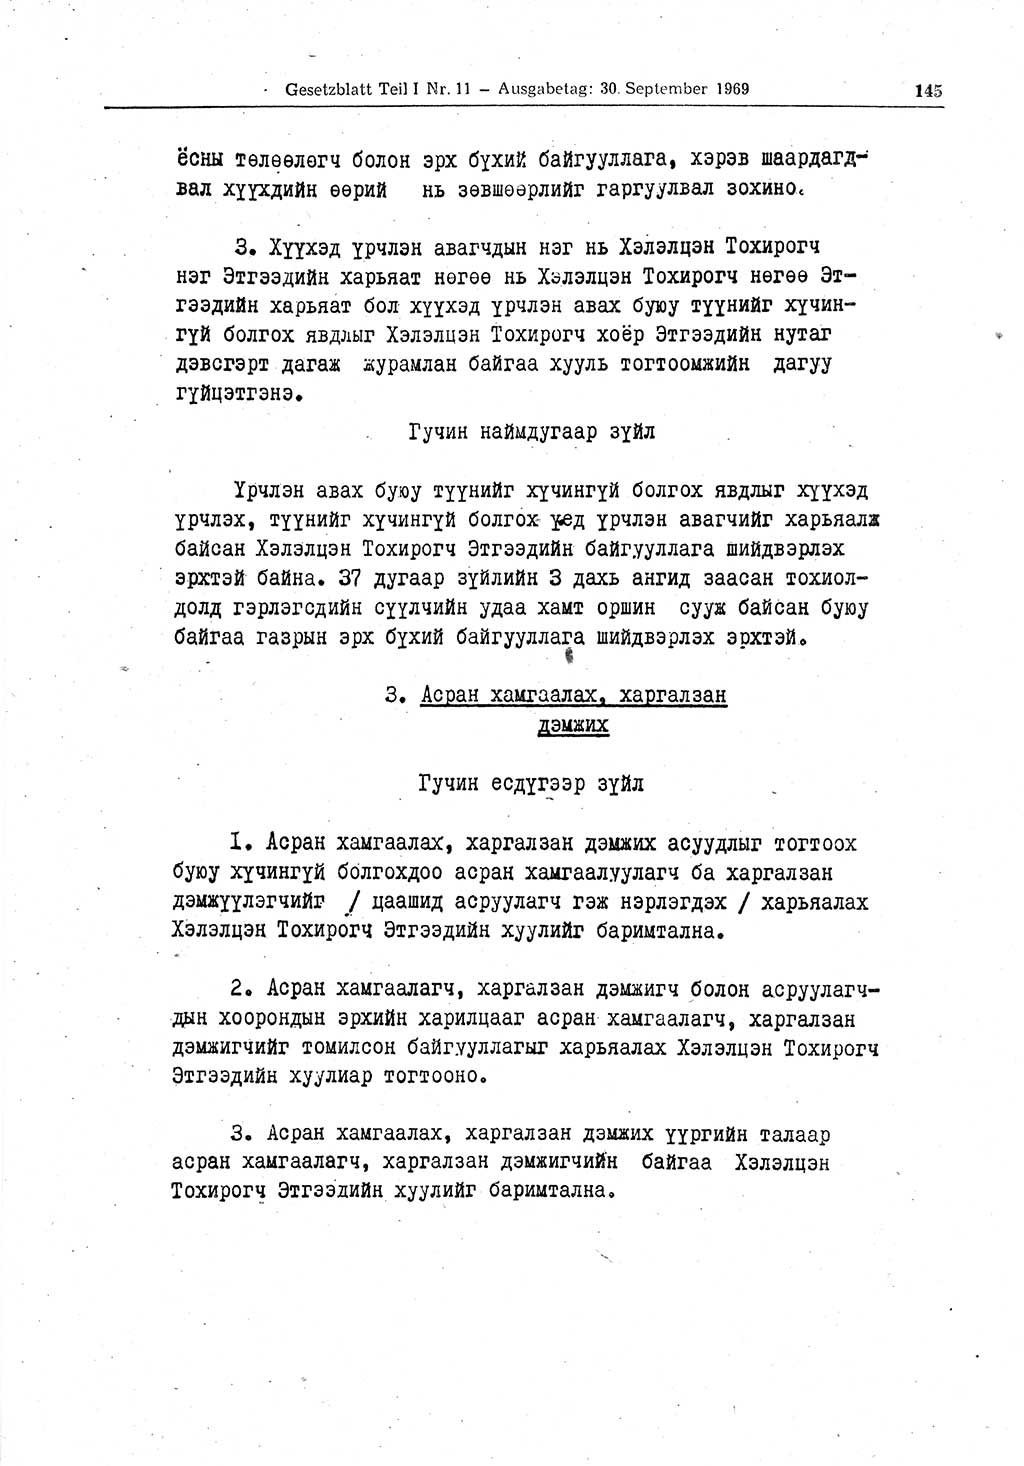 Gesetzblatt (GBl.) der Deutschen Demokratischen Republik (DDR) Teil Ⅰ 1969, Seite 145 (GBl. DDR Ⅰ 1969, S. 145)